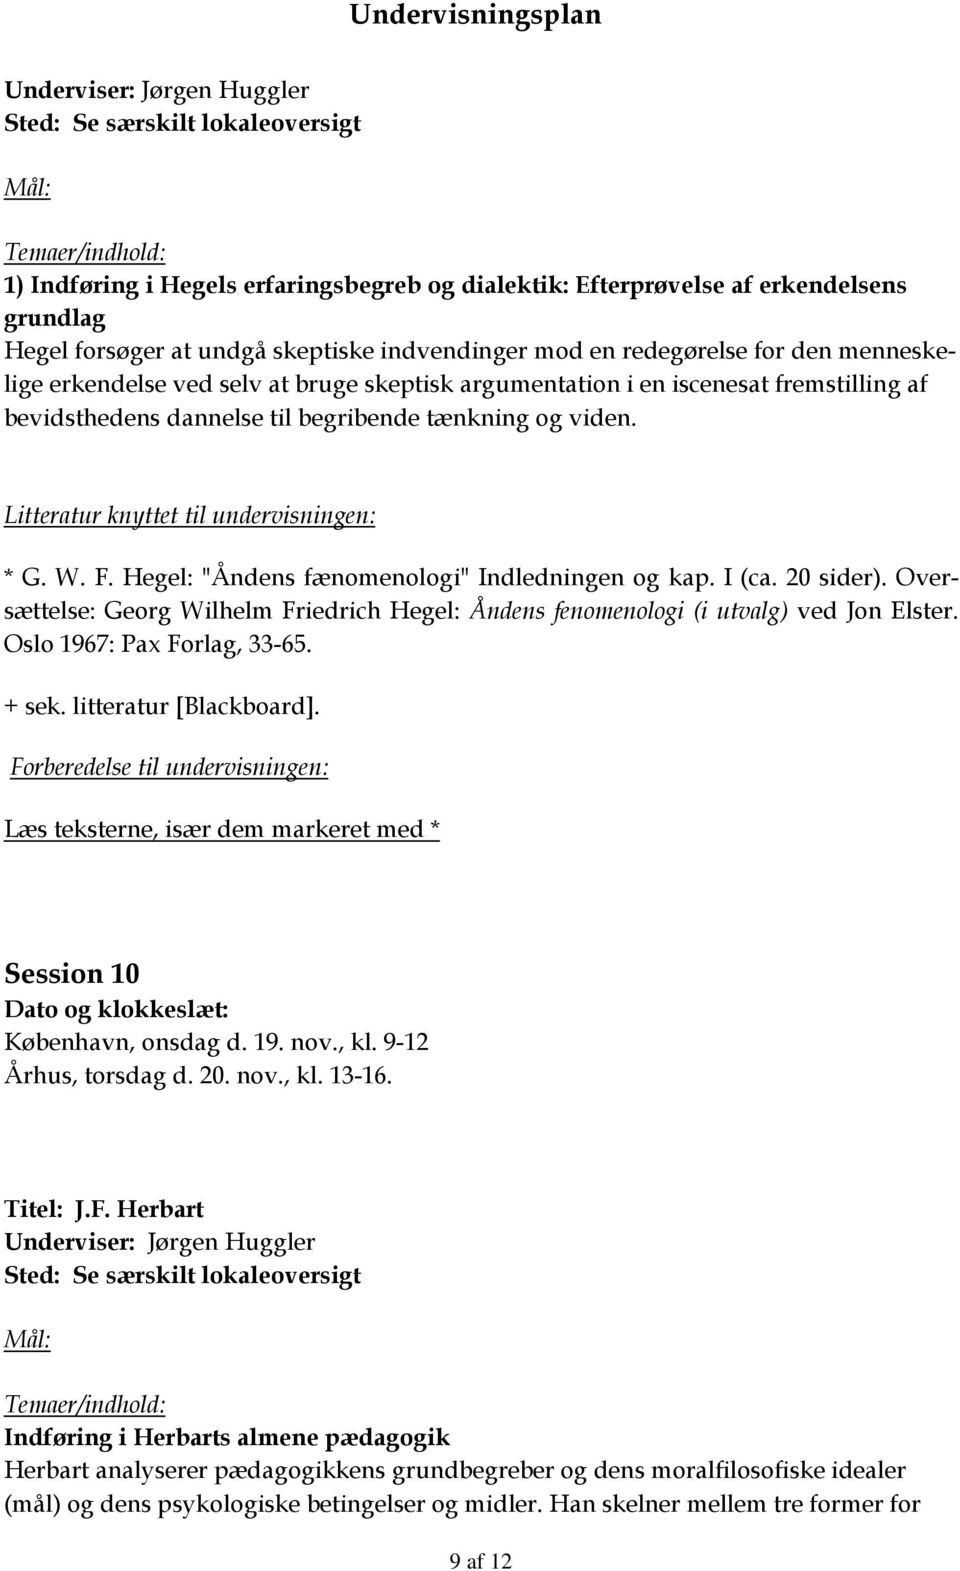 Oversættelse: Georg Wilhelm Friedrich Hegel: Åndens fenomenologi (i utvalg) ved Jon Elster. Oslo 1967: Pax Forlag, 33-65. + sek. litteratur [Blackboard]. Session 10 København, onsdag d. 19. nov., kl.